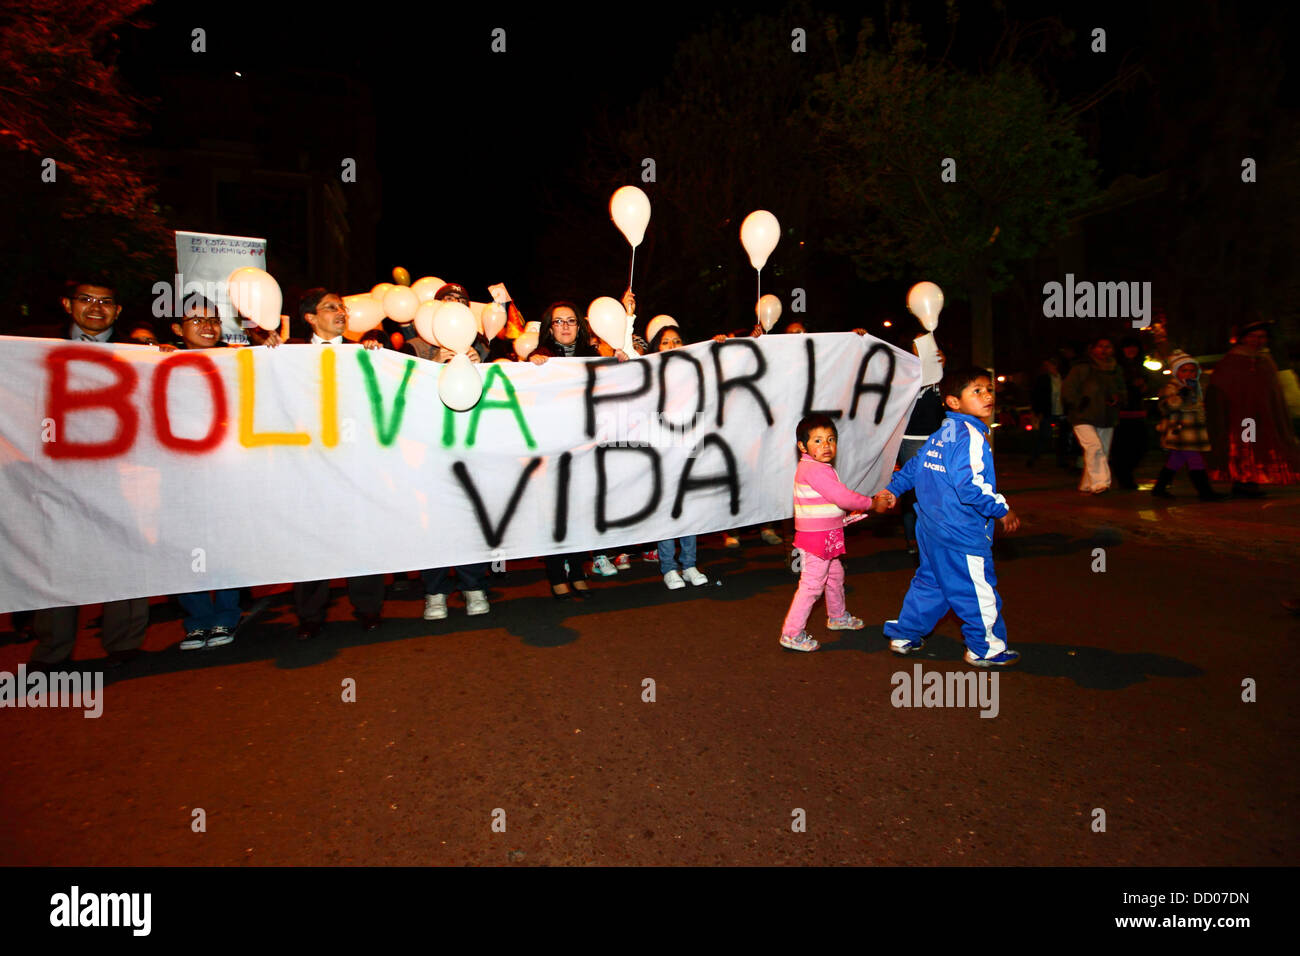 LA PAZ, Bolivien, 22. August 2013. Menschen nehmen Teil an einer Demonstration organisiert von Red Pro-Vida (Pro Life Network) gegen die Entkriminalisierung der Abtreibung zu protestieren. Bolivien hat ob Abtreibung seit März 2012 zu entkriminalisieren debattiert.  Bildnachweis: James Brunker / Alamy Live News Stockfoto